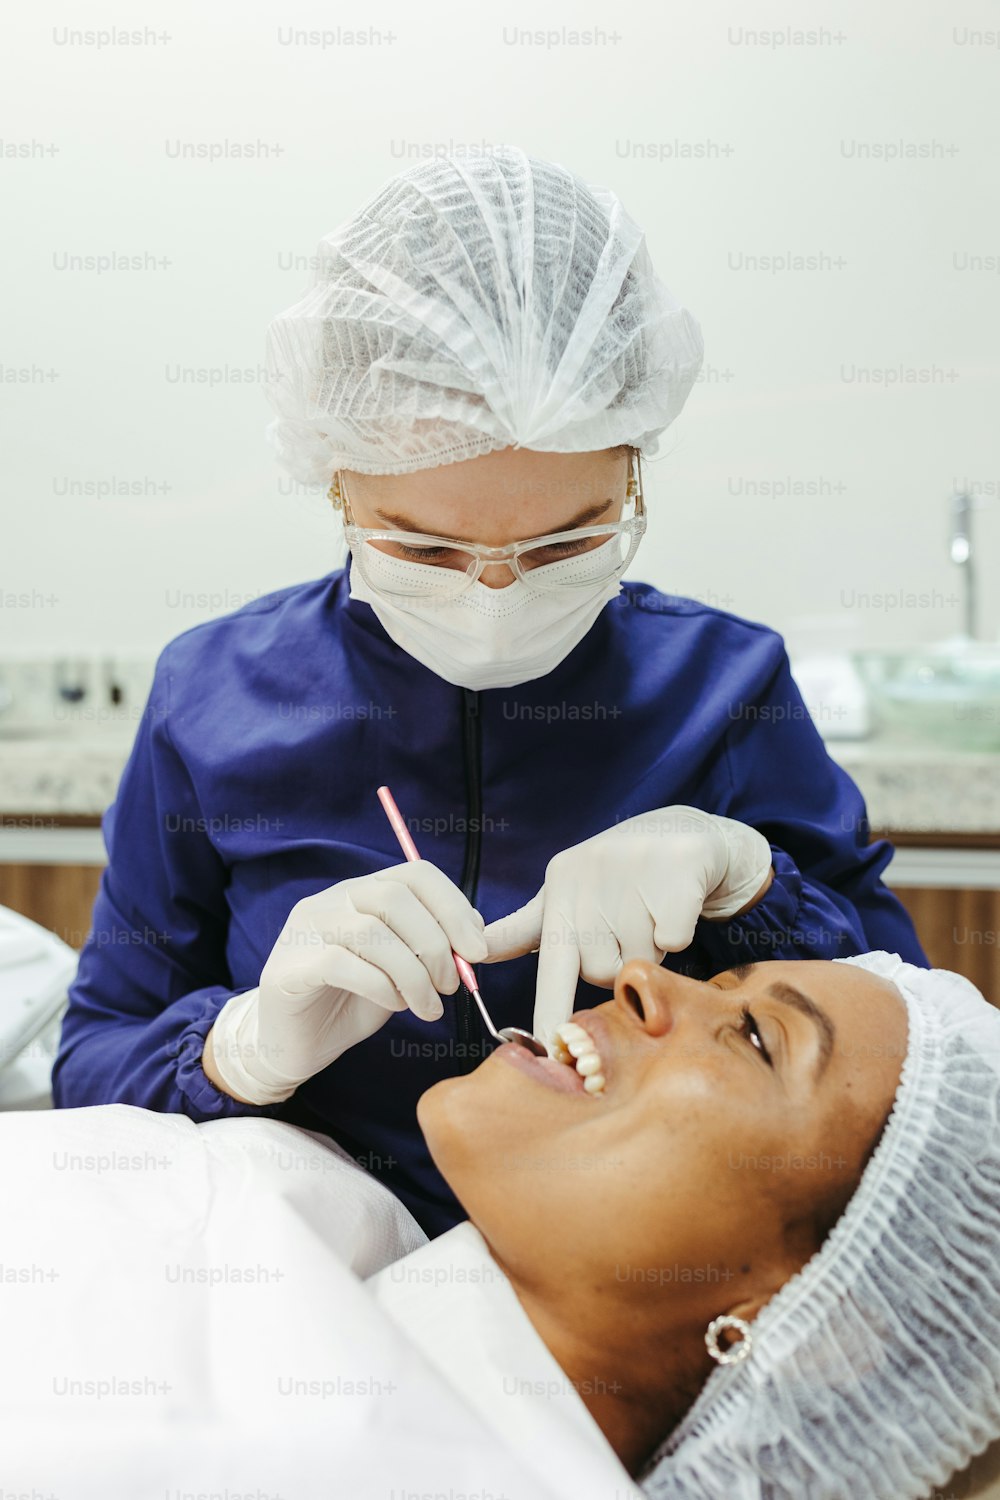 Una mujer que se revisa los dientes por un dentista